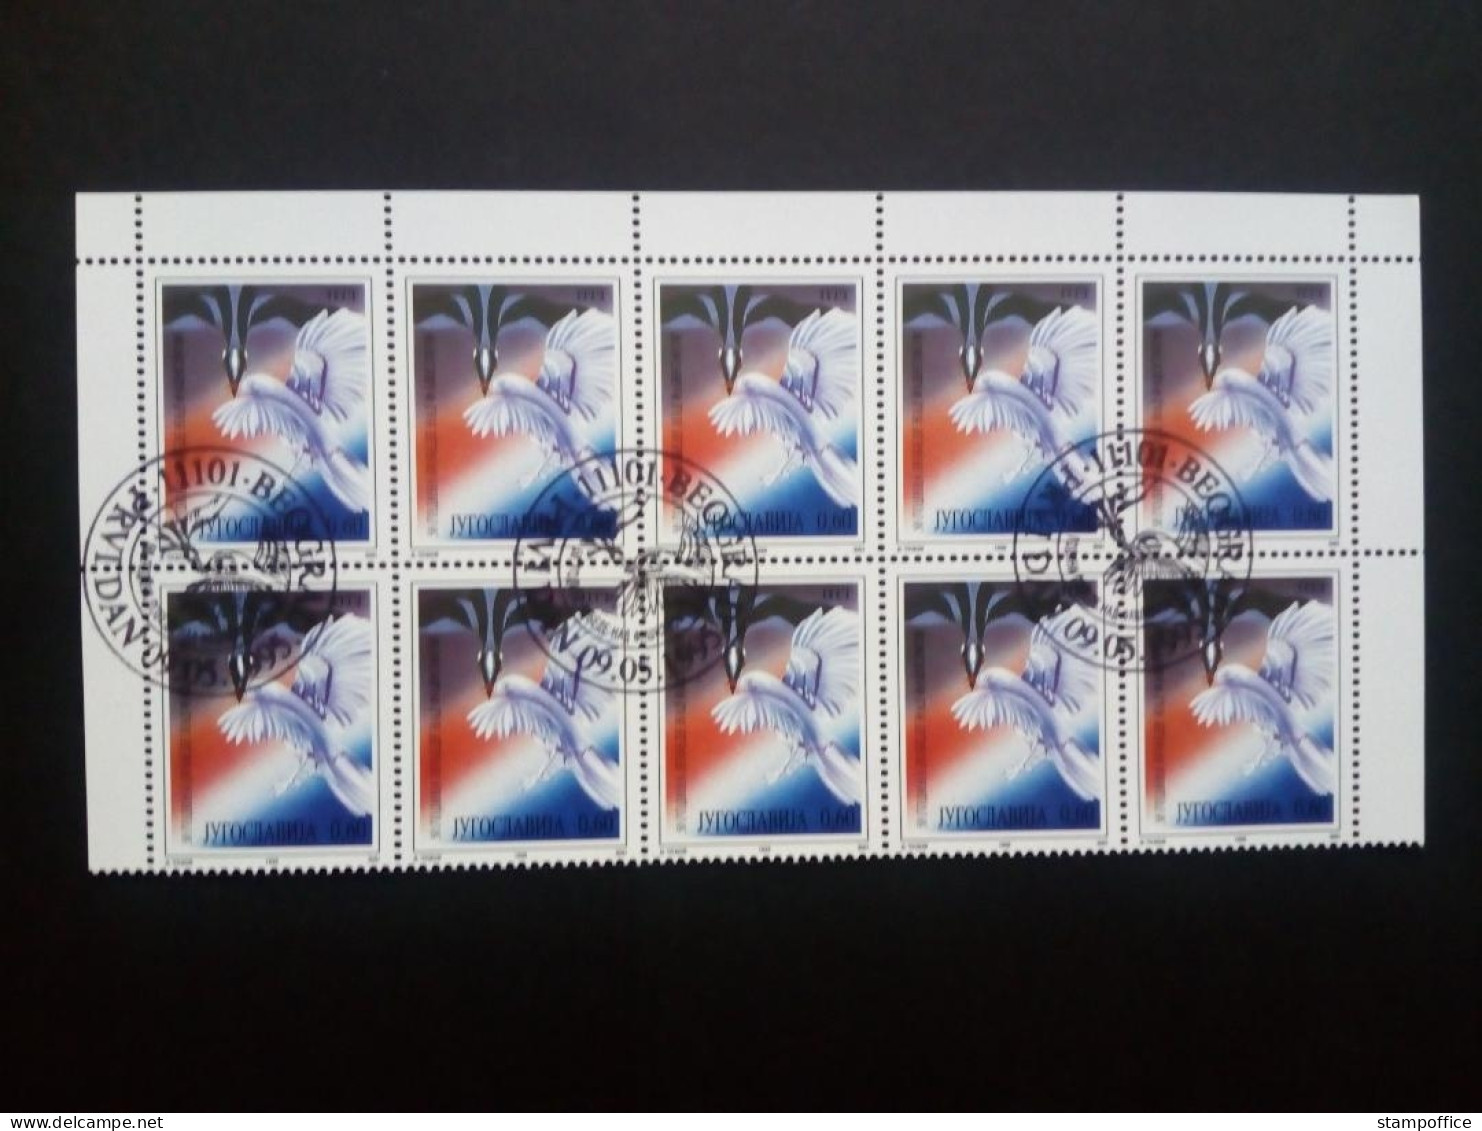 JUGOSLAWIEN MI-NR. 2714 GESTEMPELT BOGENTEIL(10) 50 JAHRE BEENDIGUNG DES 2. WELTKRIEGS 1995 - Used Stamps